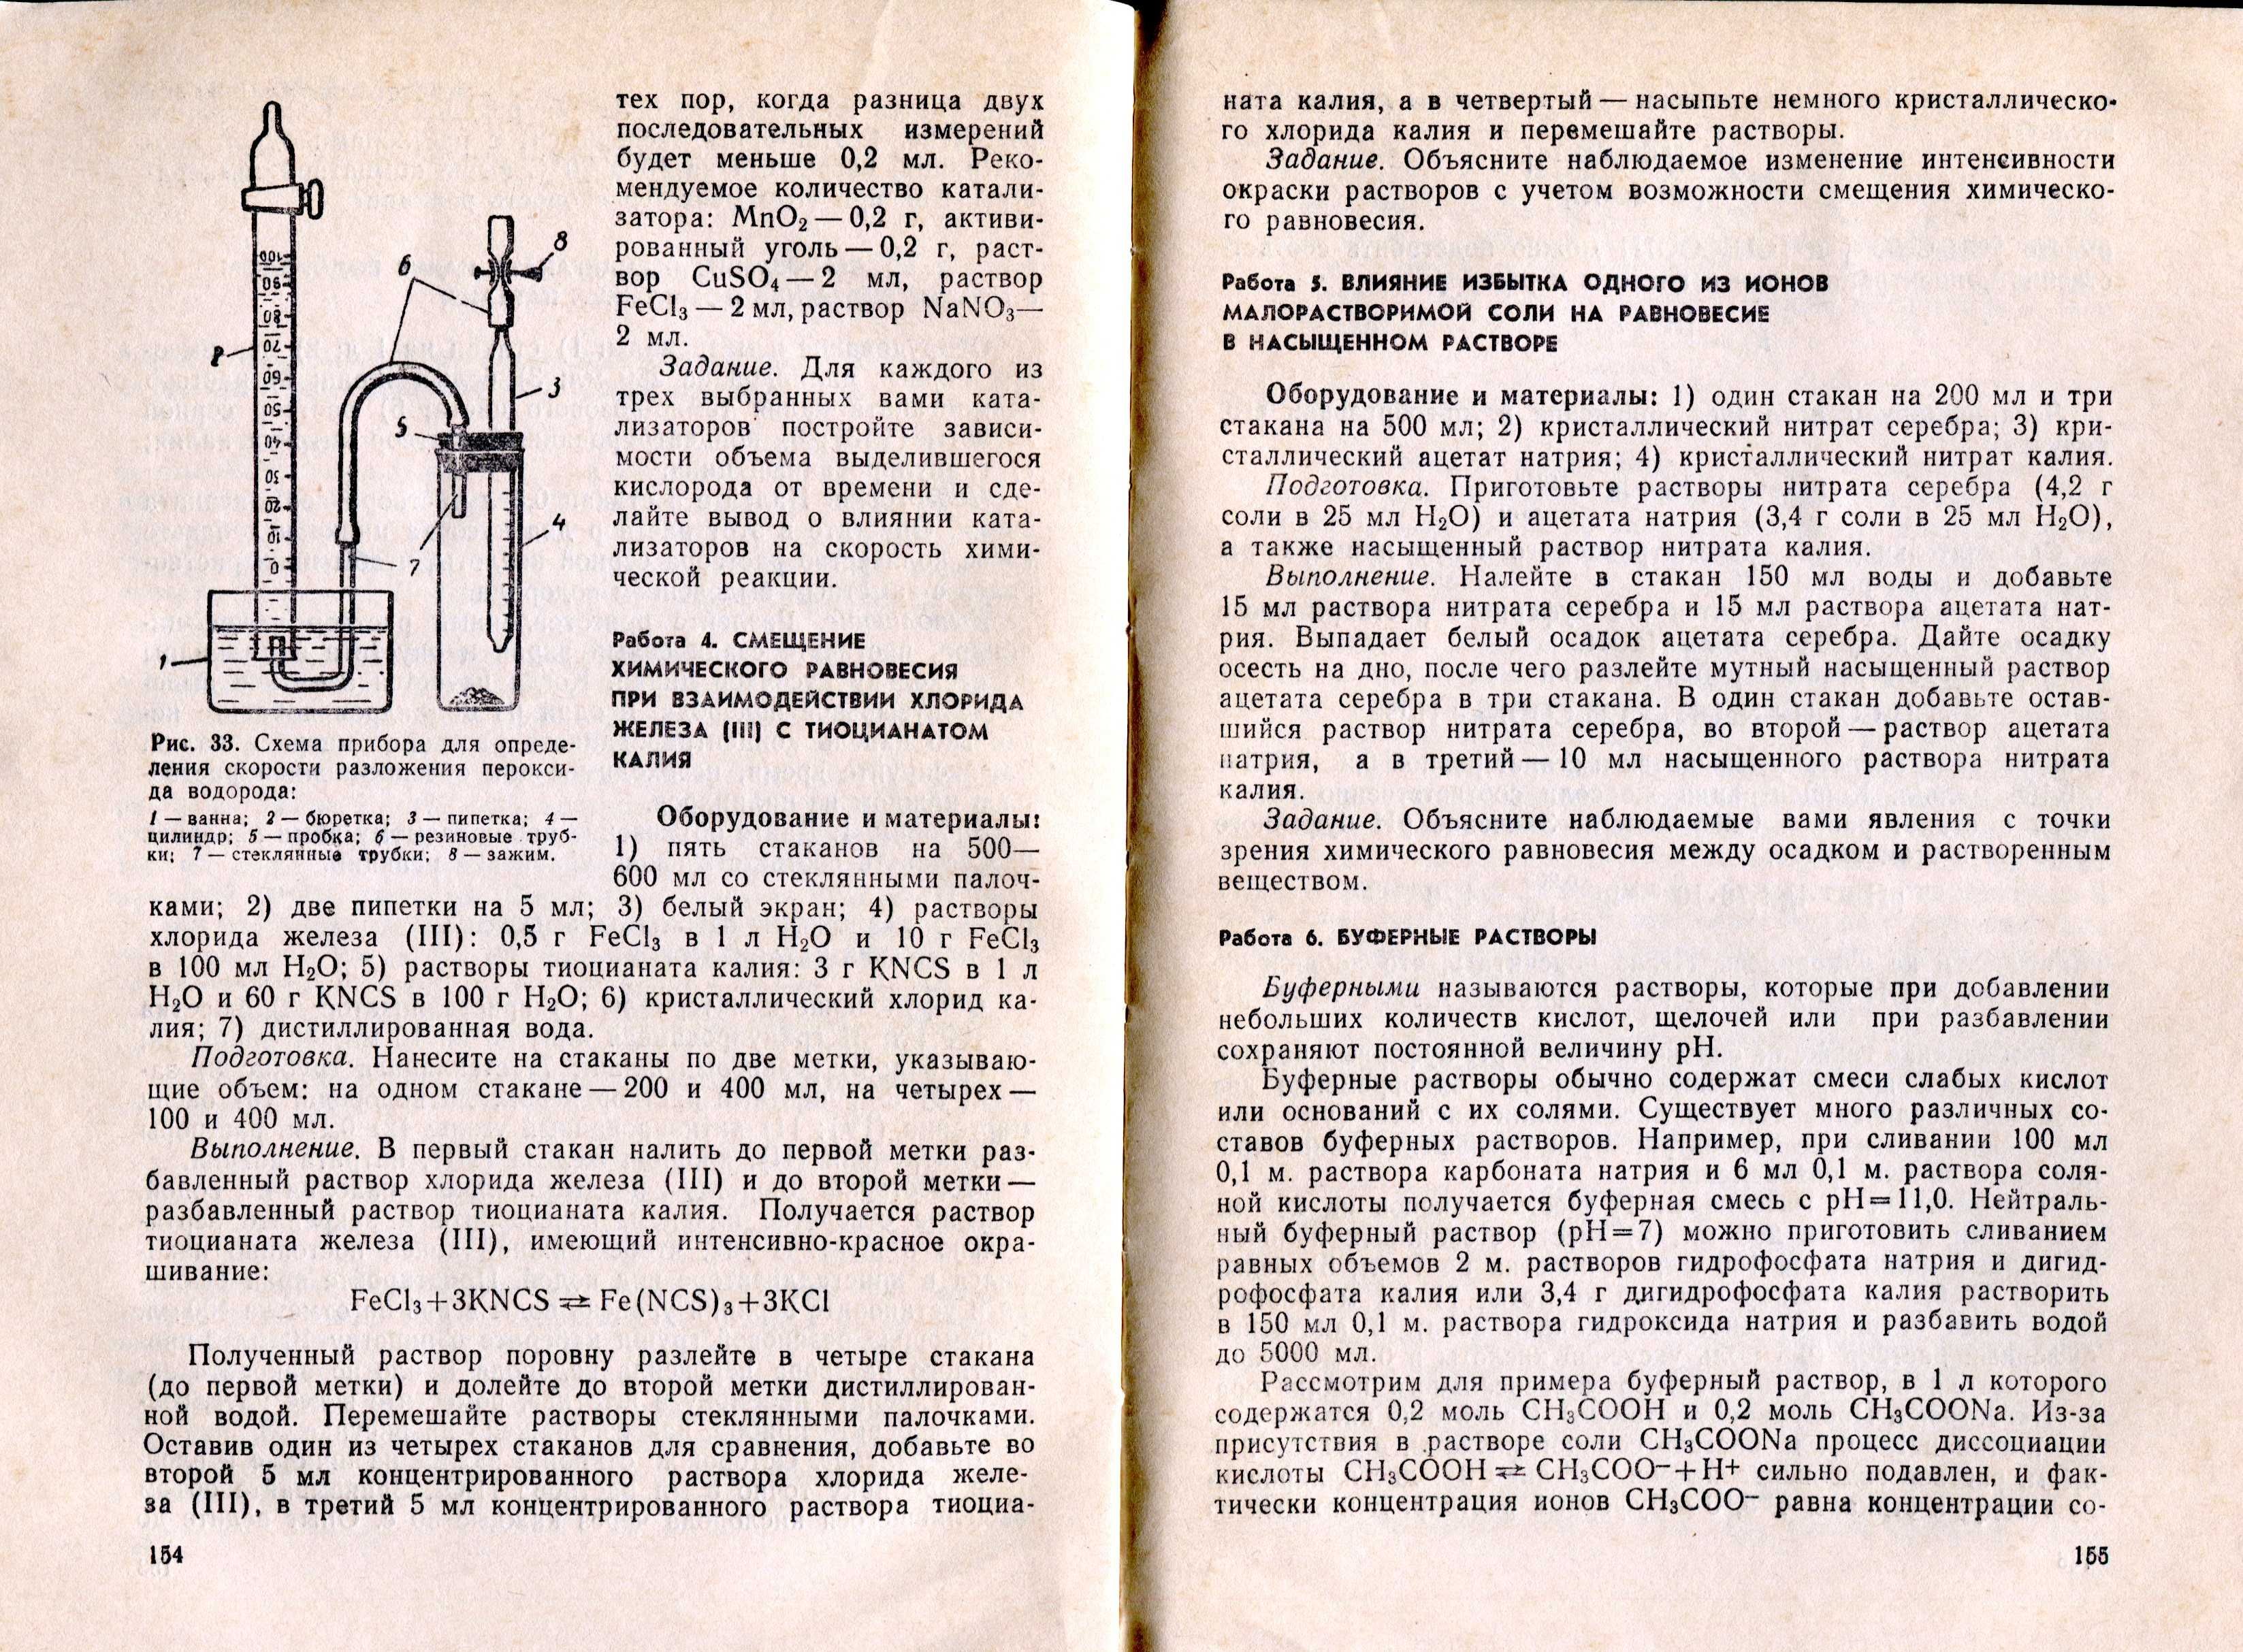 Третьяков Ю., Метлин Ю. Основы общей химии (1985) - 160 с.